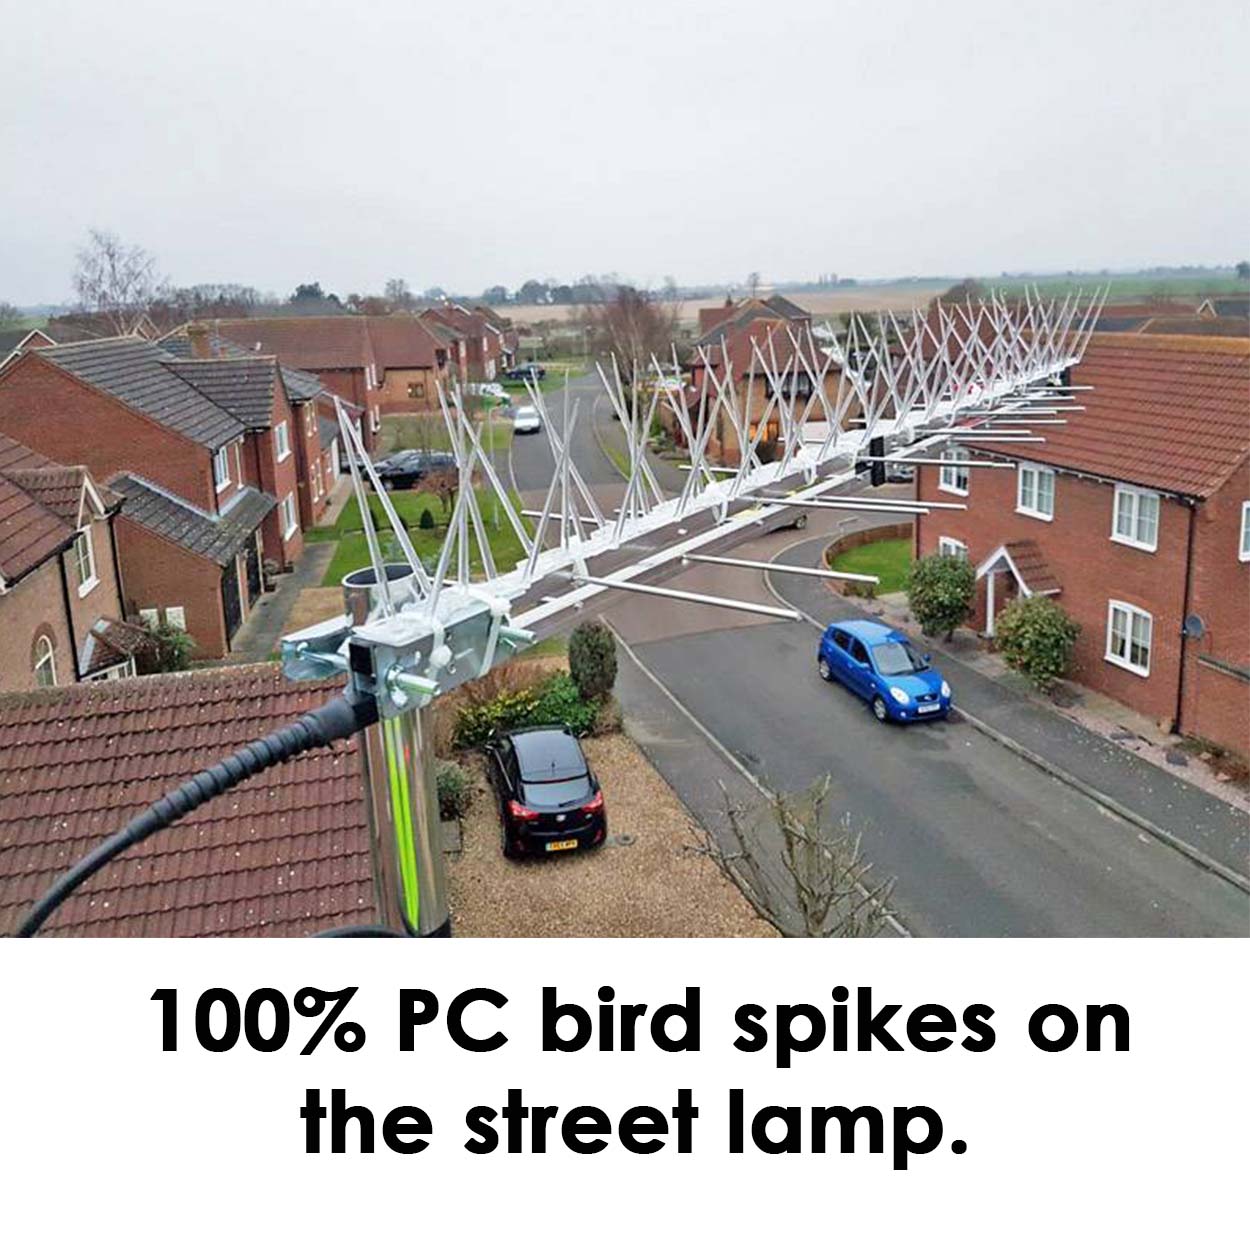 100% PC bird spikes on the street lamp.